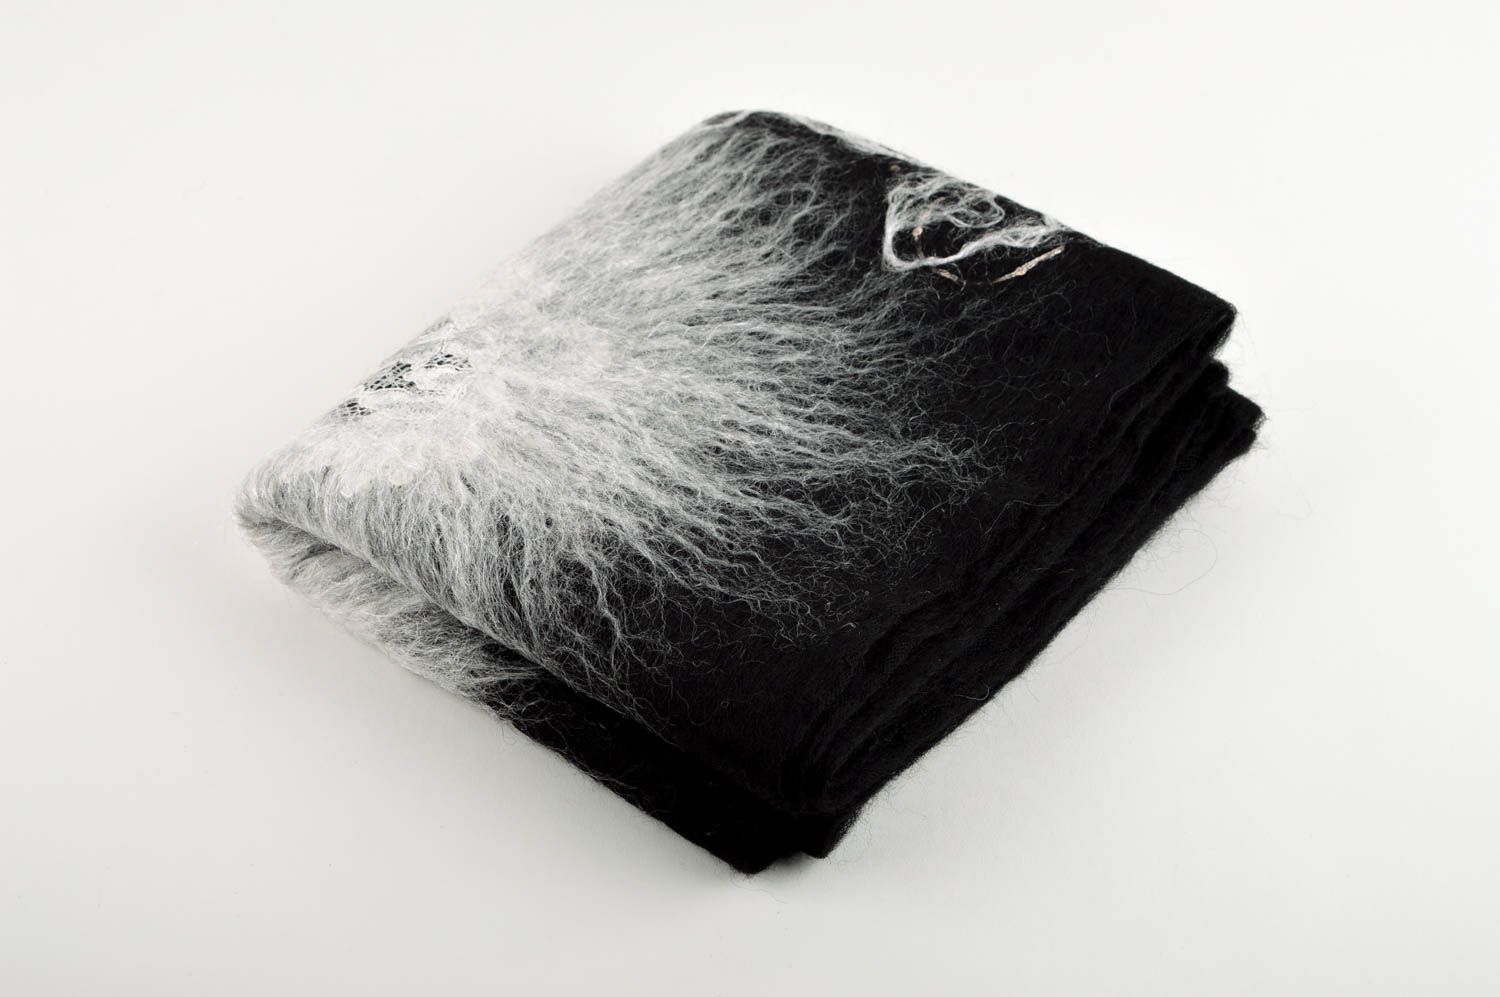 Écharpe noire faite main Châle femme laine tissus design original Idée cadeau photo 1